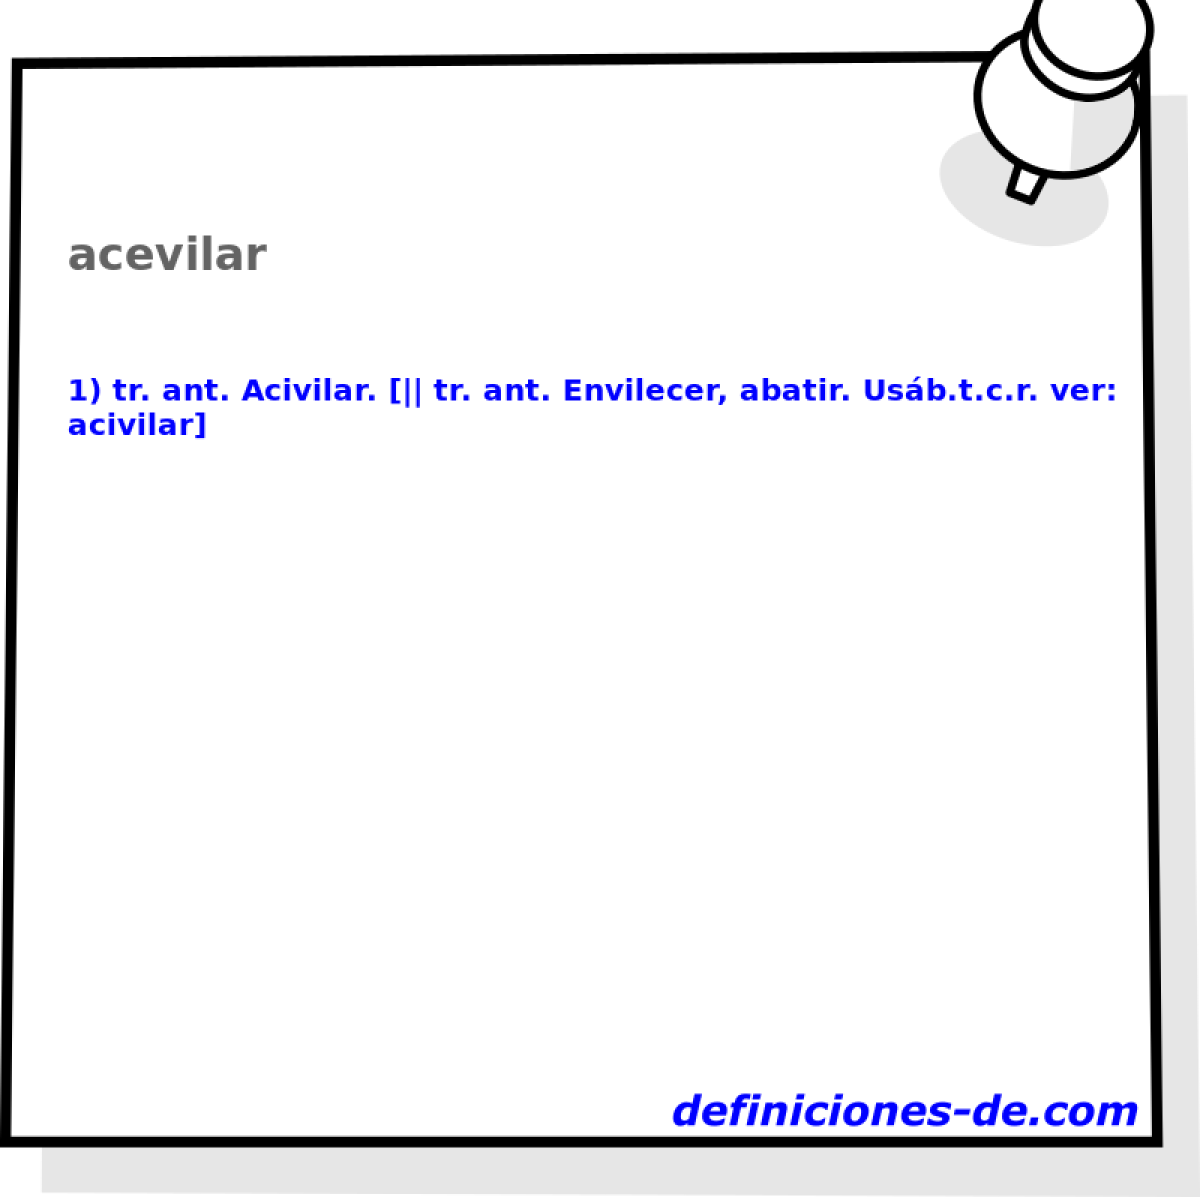 acevilar 